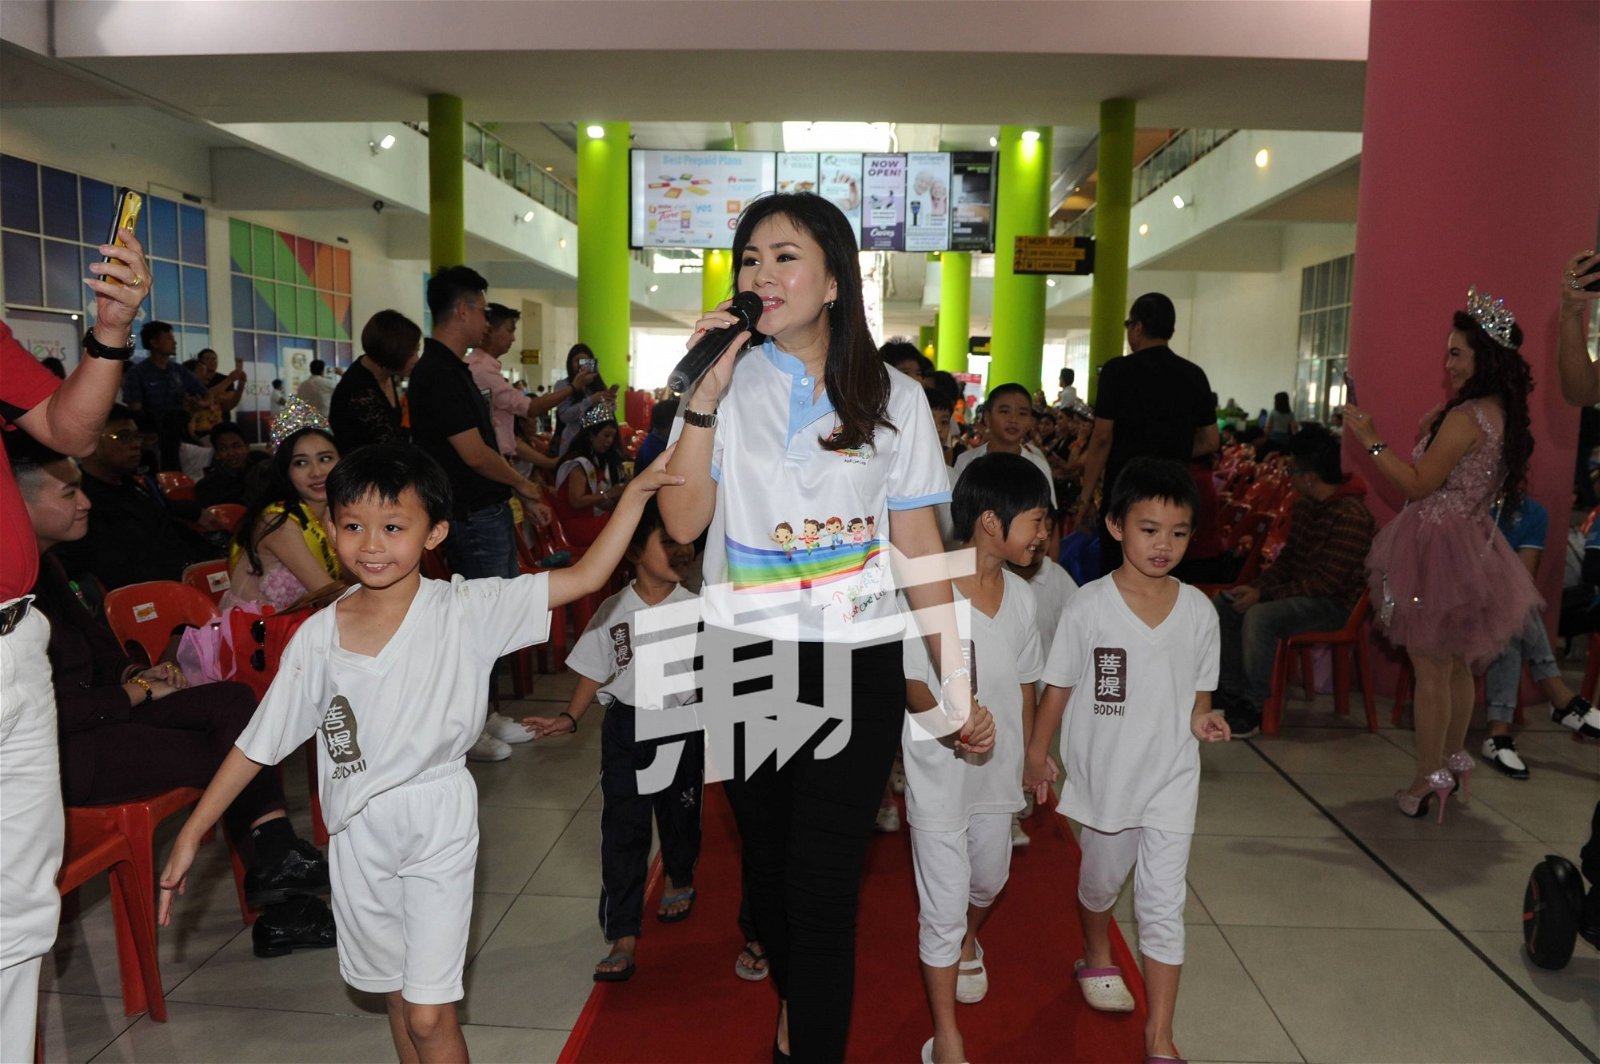 歌手黄晓凤献爱心，在现场落力演出， 她呼吁大家要珍惜当下、珍惜身边人。